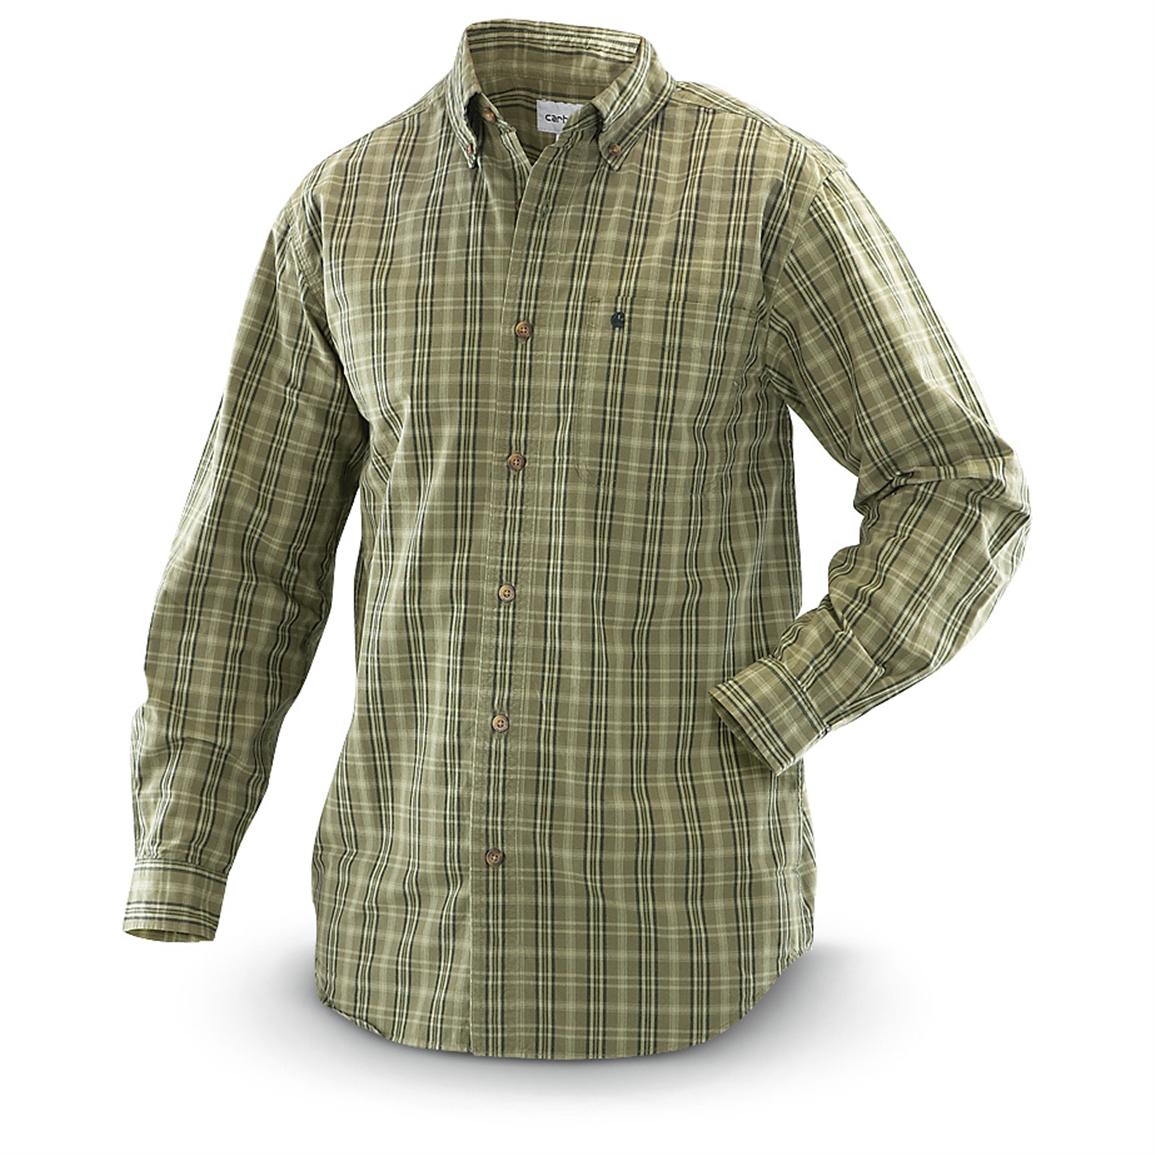 Carhartt Bellevue Plaid Long-sleeved Work Shirt - 303653, Shirts at ...